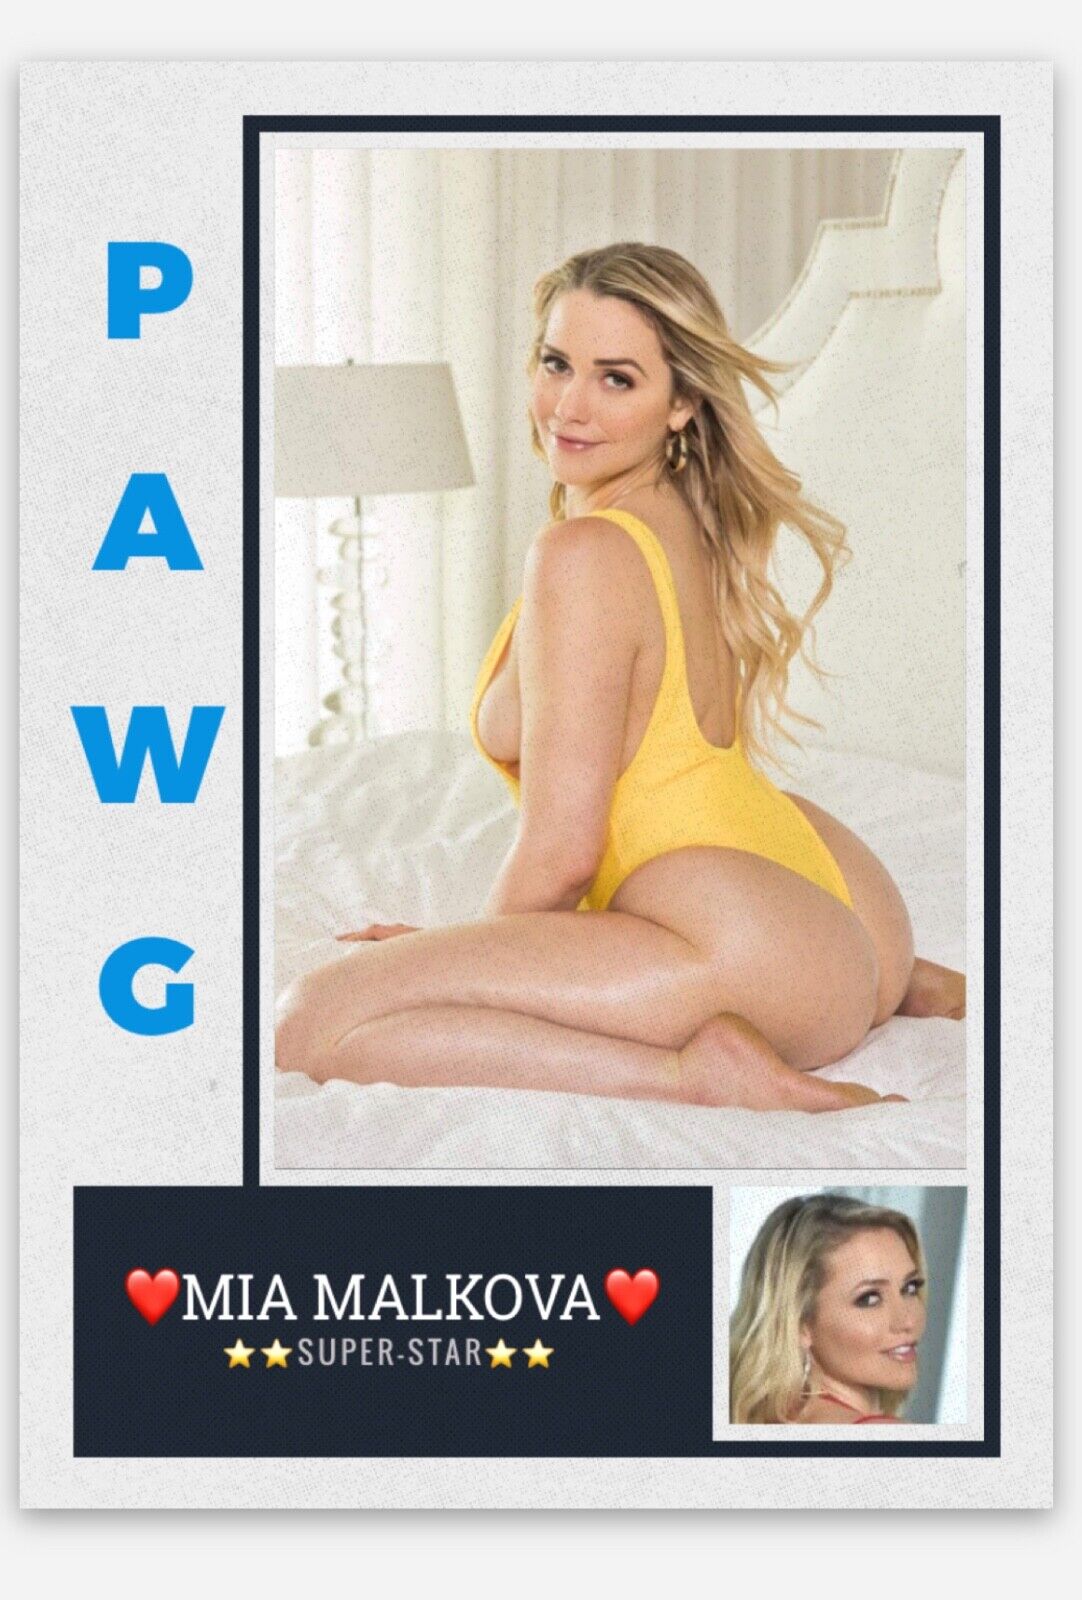 abdalla abood recommends Mia Malkova Pawg